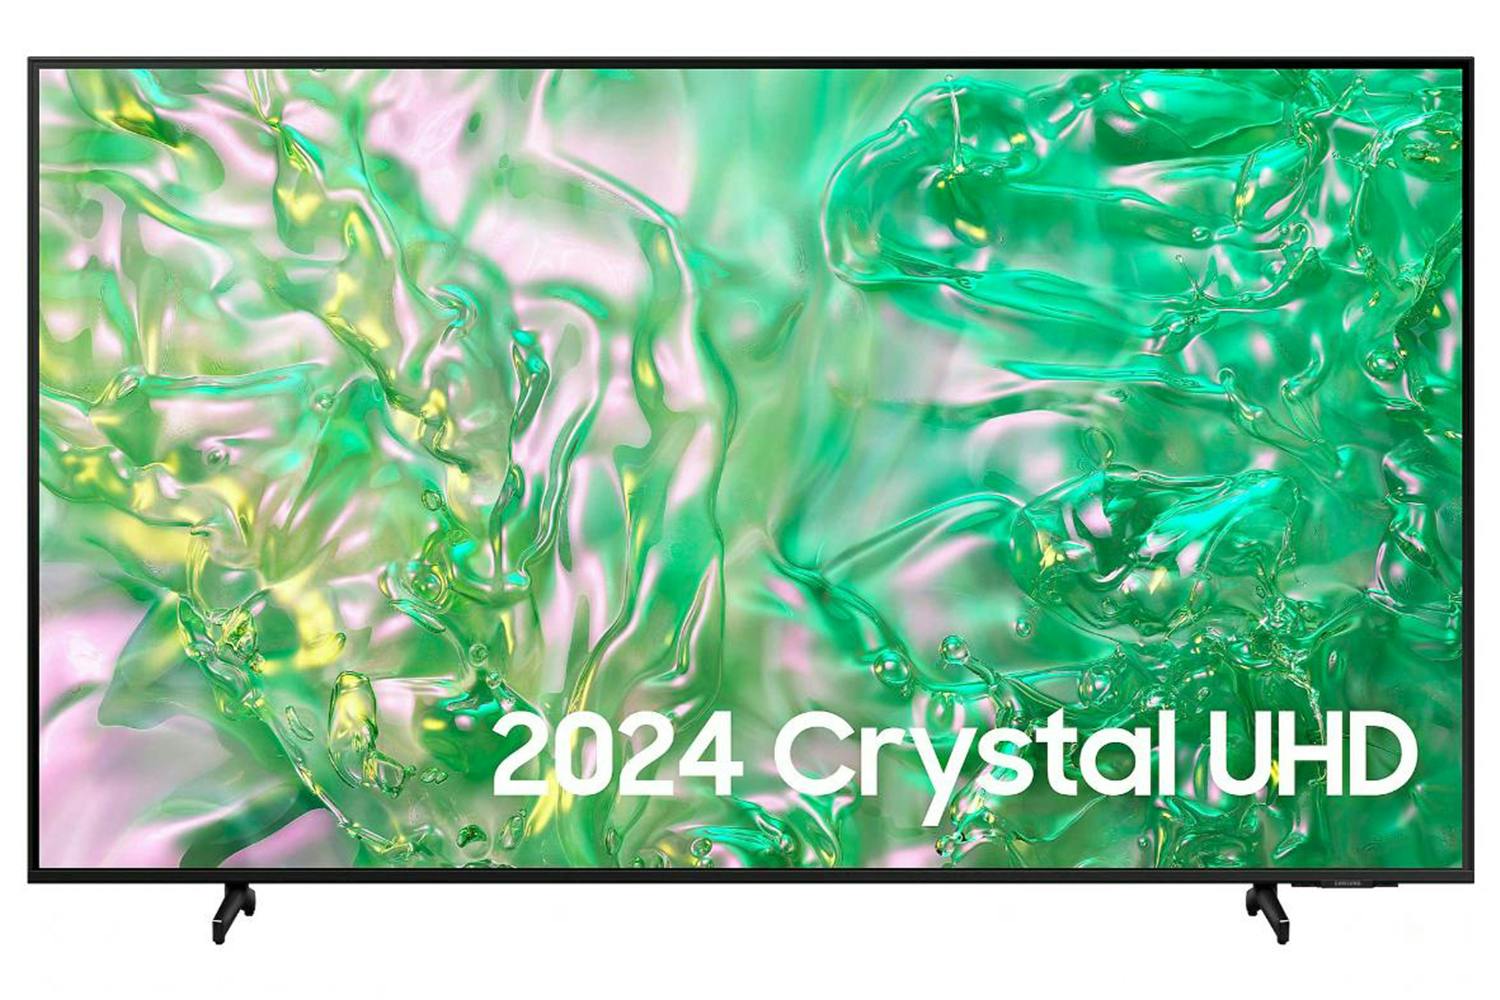 Samsung DU8070 55" Crystal UHD 4K HDR Smart TV (2024) | UE55DU8070UXXU